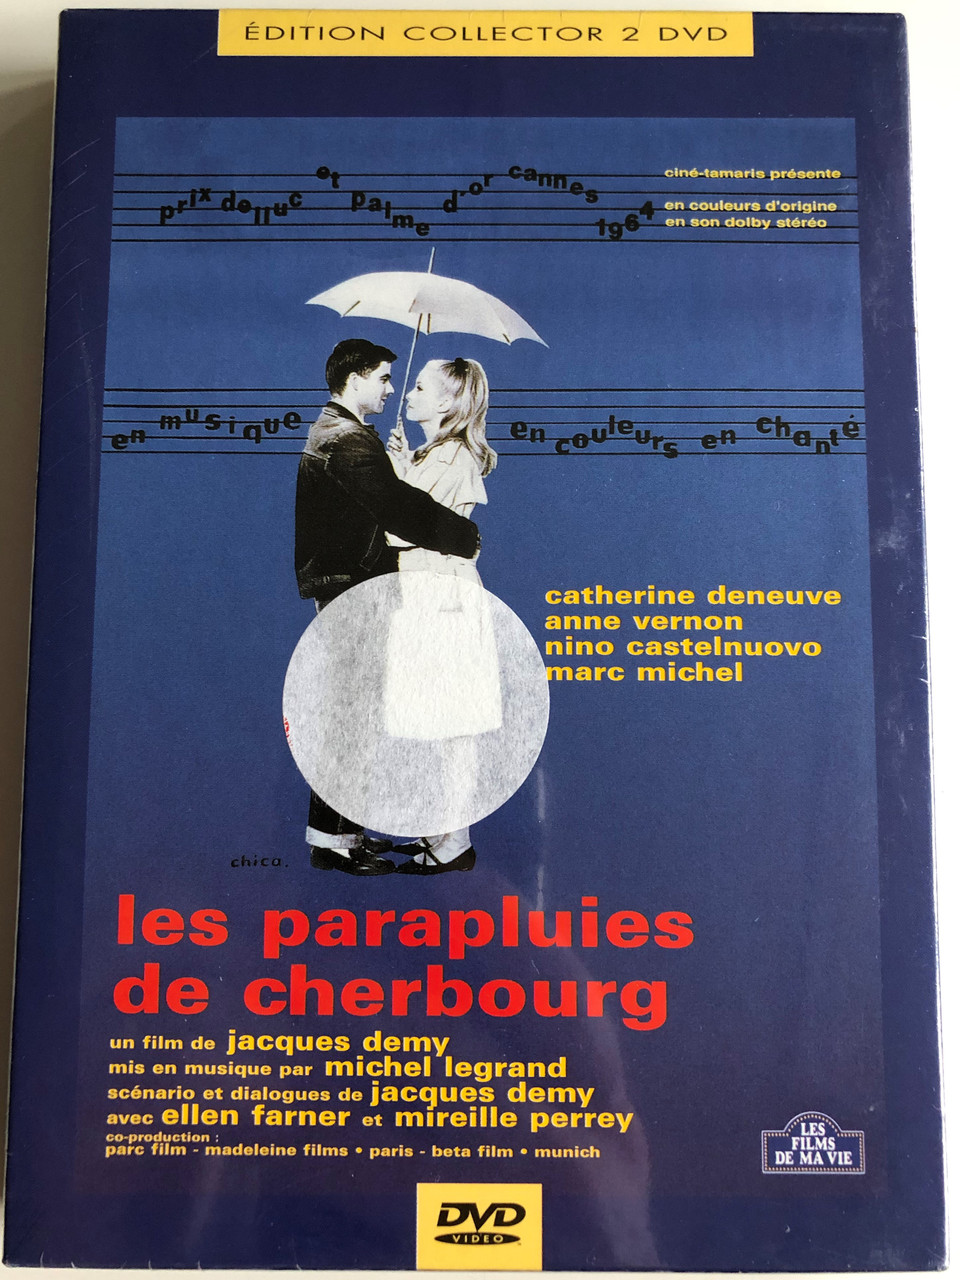 Les parapluies de cherbourg (1964) 2DVD L'univers de Jacques Demy (1990) /  The Umbrellas of Cherbourg /